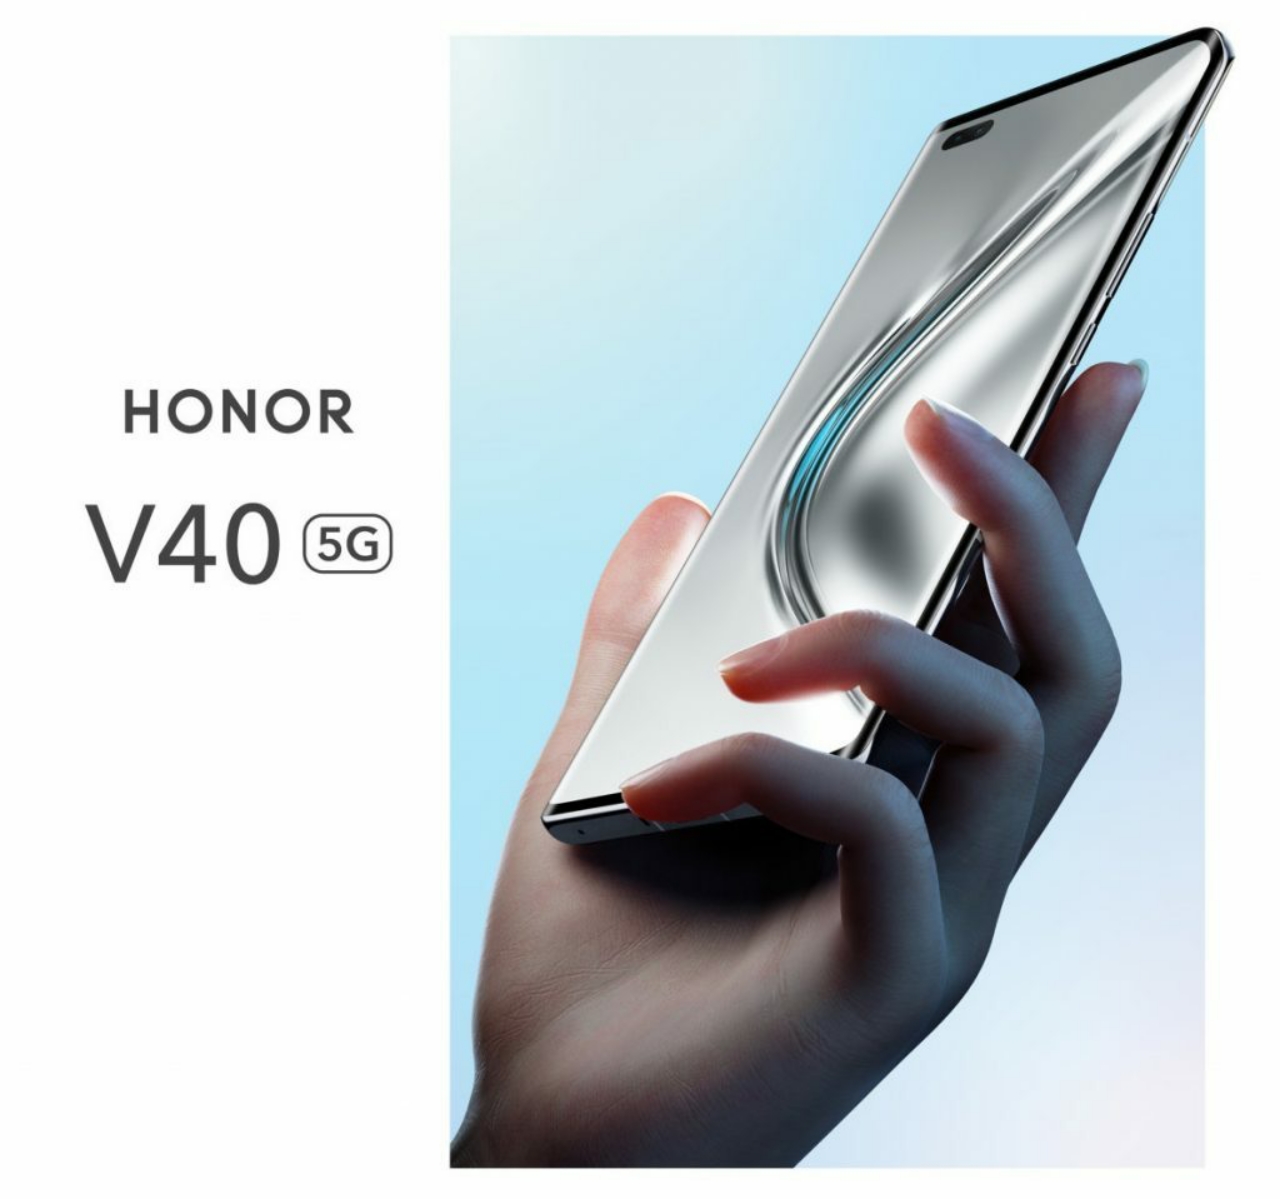 Ngày ra mắt Honor V40 với màn hình cong OLED 120Hz, camera kép phía trước chính thức được xác nhận là 18 tháng 1